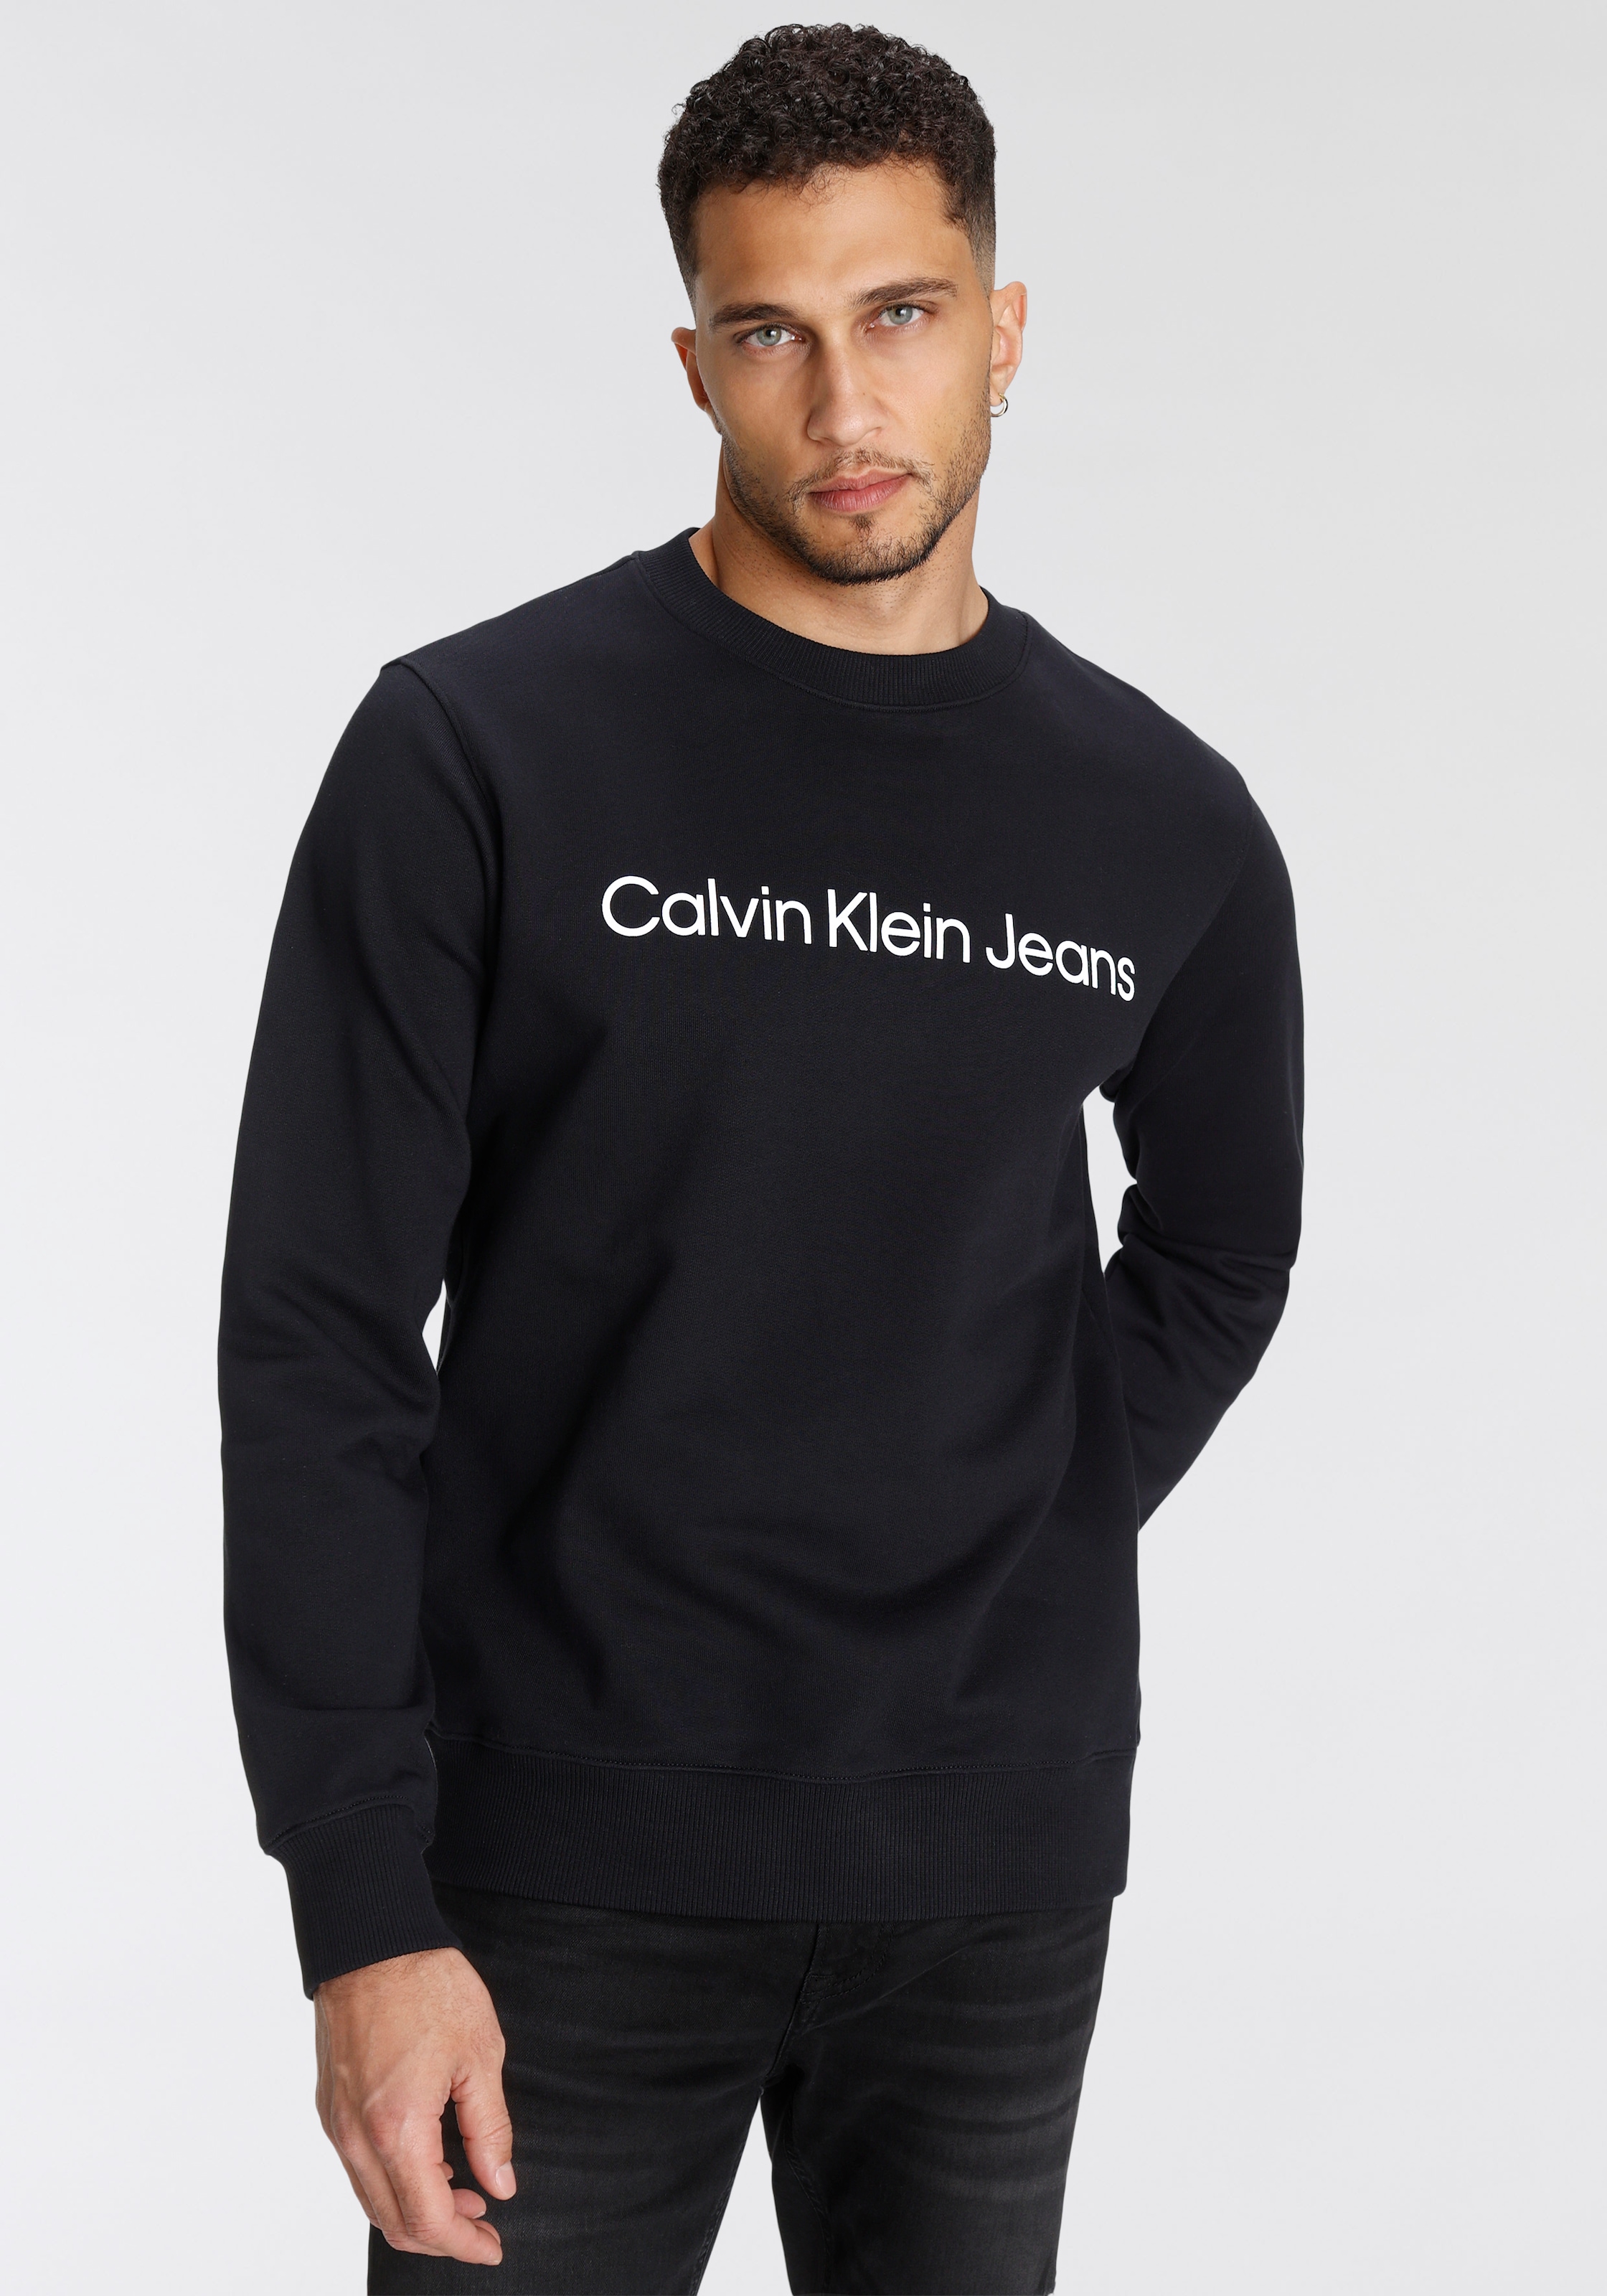 »CORE LOGO Klein OTTO Sweatshirt INSTIT Jeans bei Calvin SWEATSHIRT«